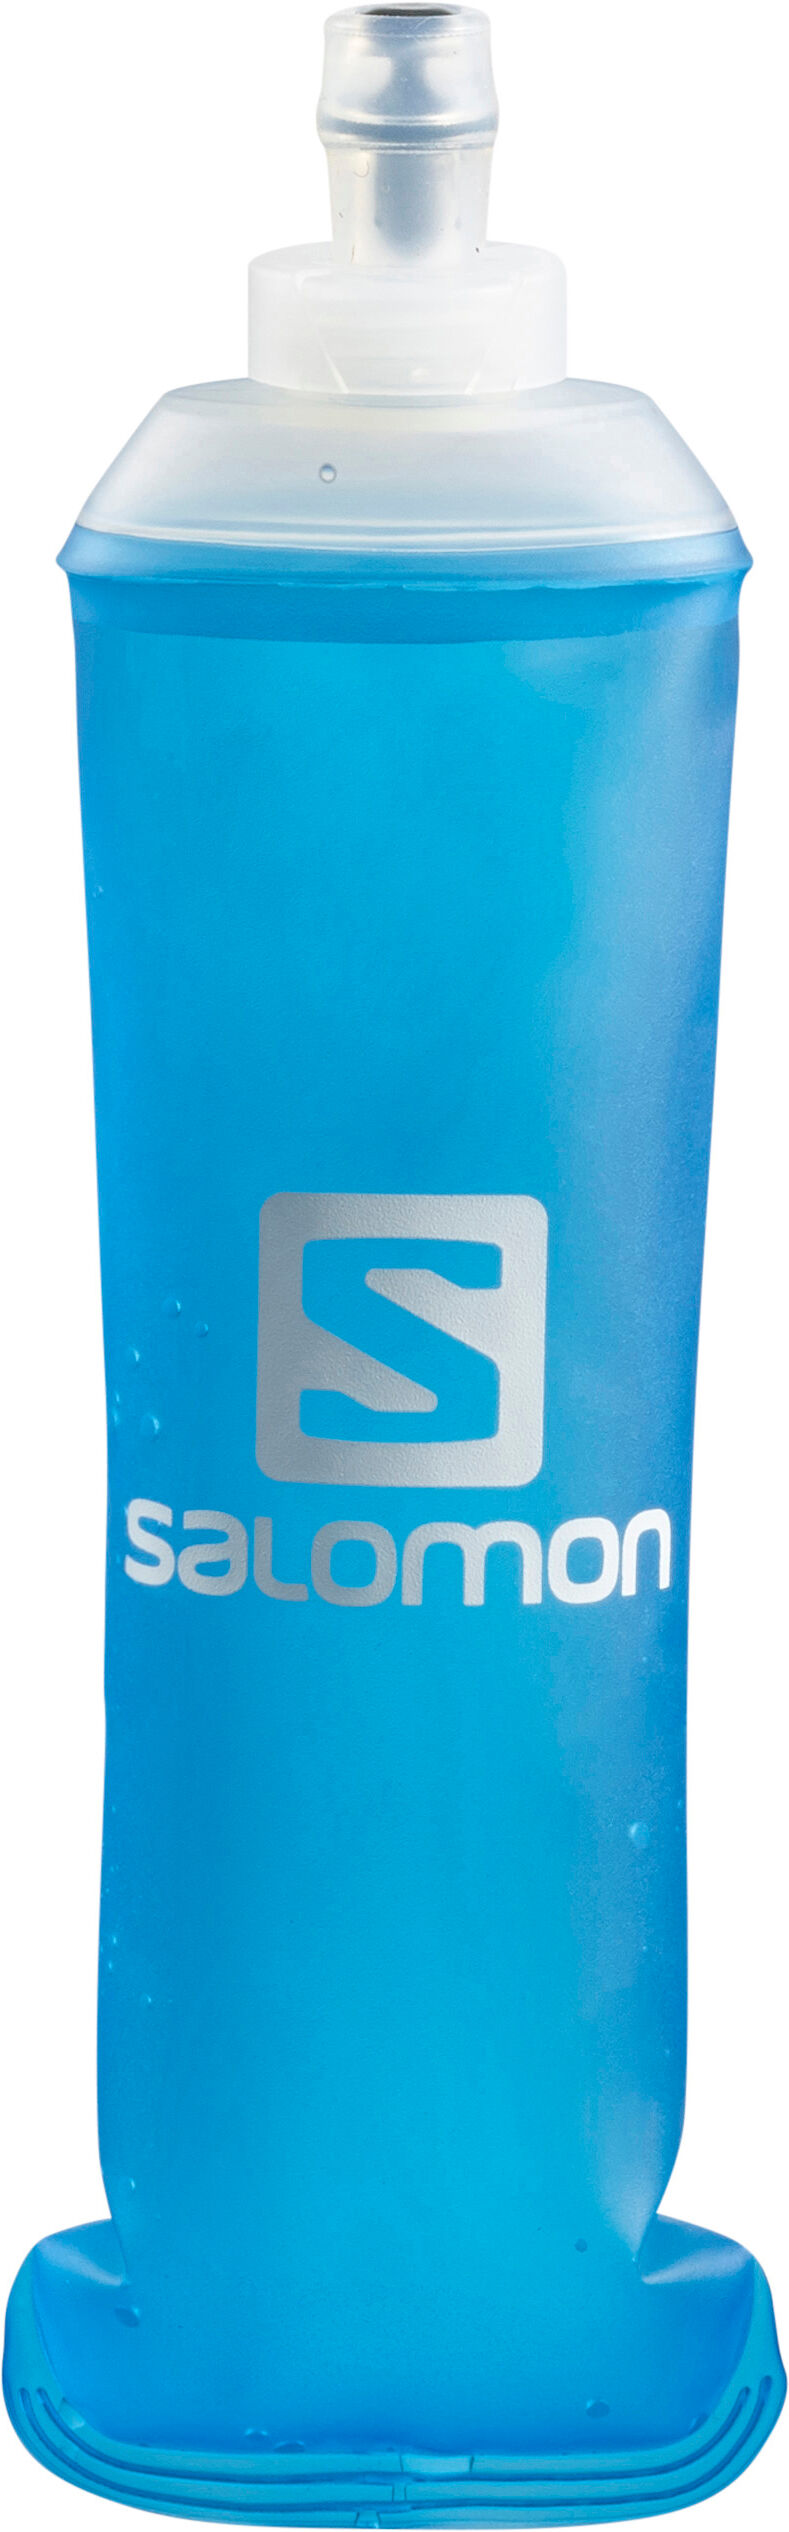 Salomon Soft Flask 500 mL - Trinkflasche